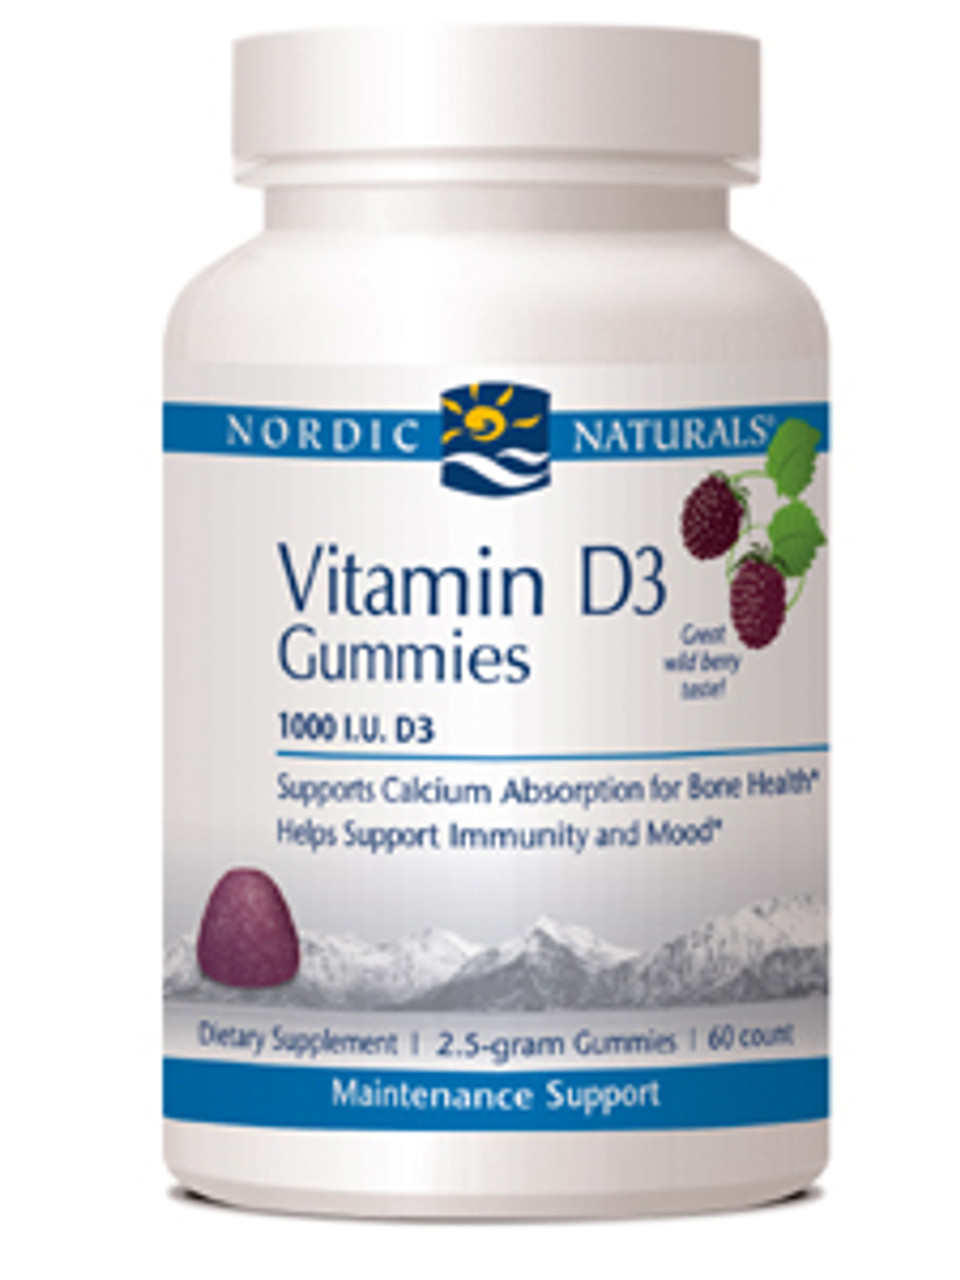 Нордик витамин д3. Nordic naturals Vitamin d3. Нордик натуралс витамин д3. Nordic naturals Vitamin d3 Gummies. Vitamin d3 gummies